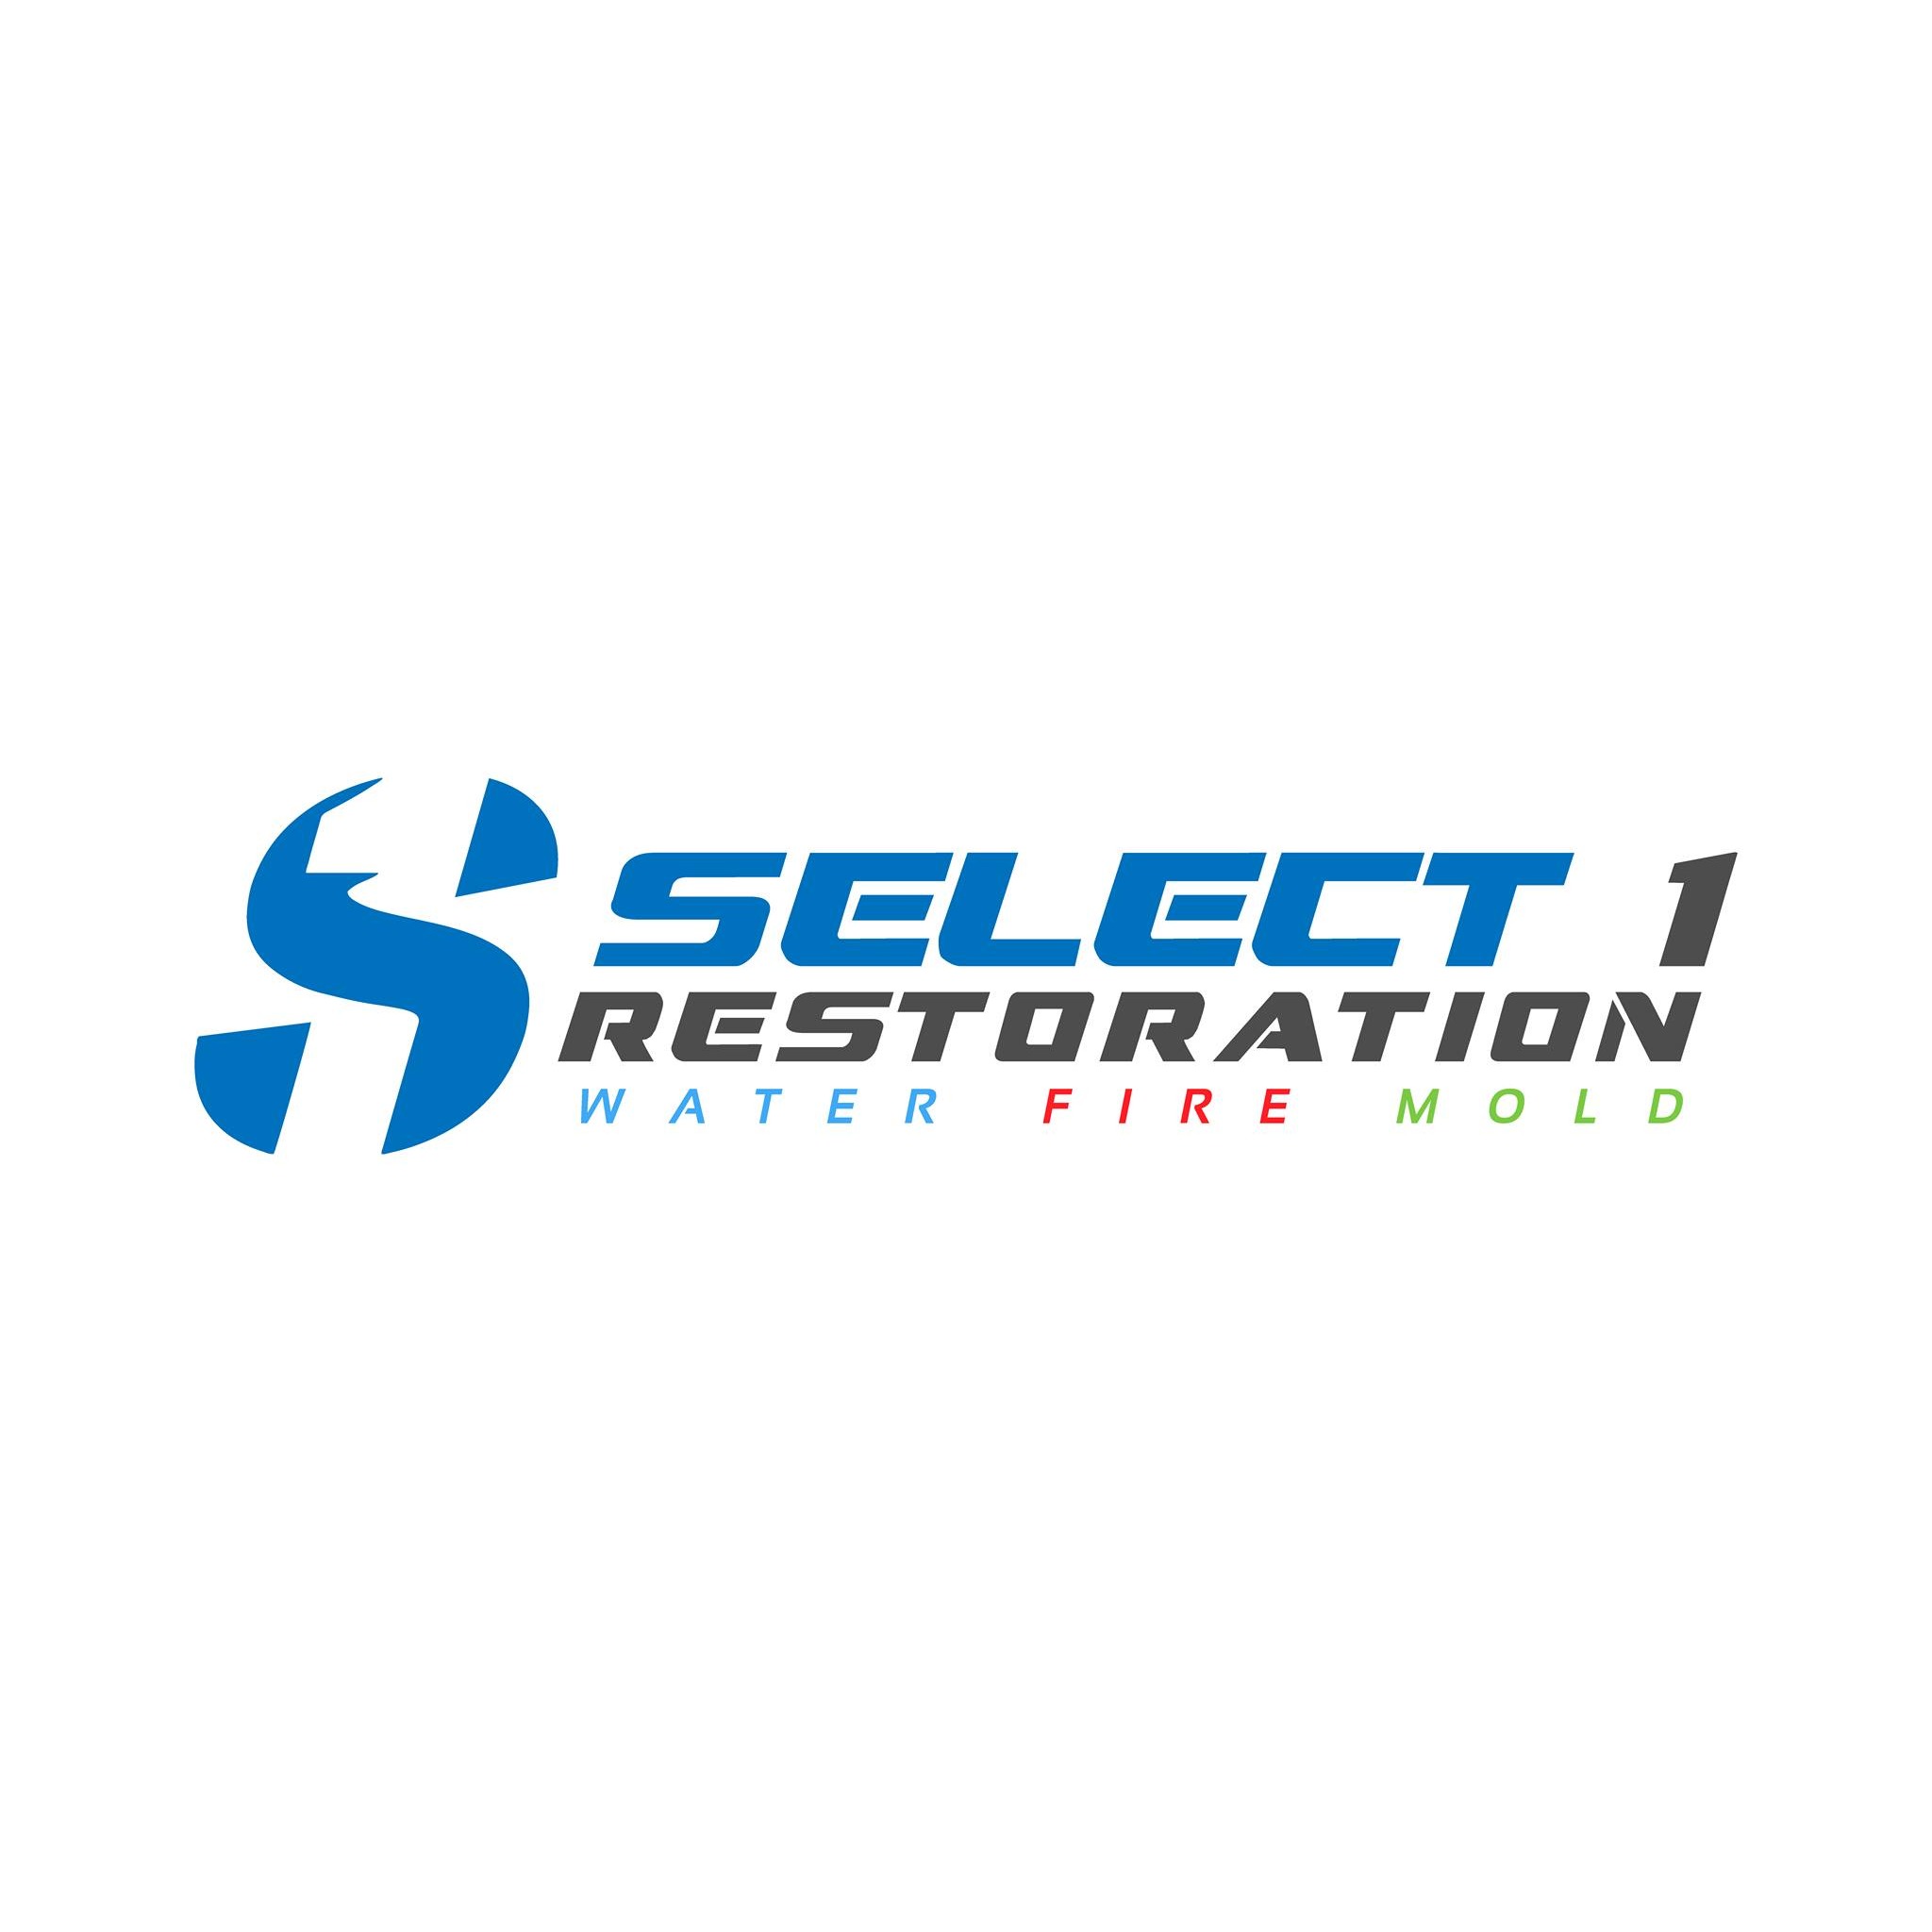 Select 1 Restoration, Inc. - Miami, FL - (305)399-3590 | ShowMeLocal.com